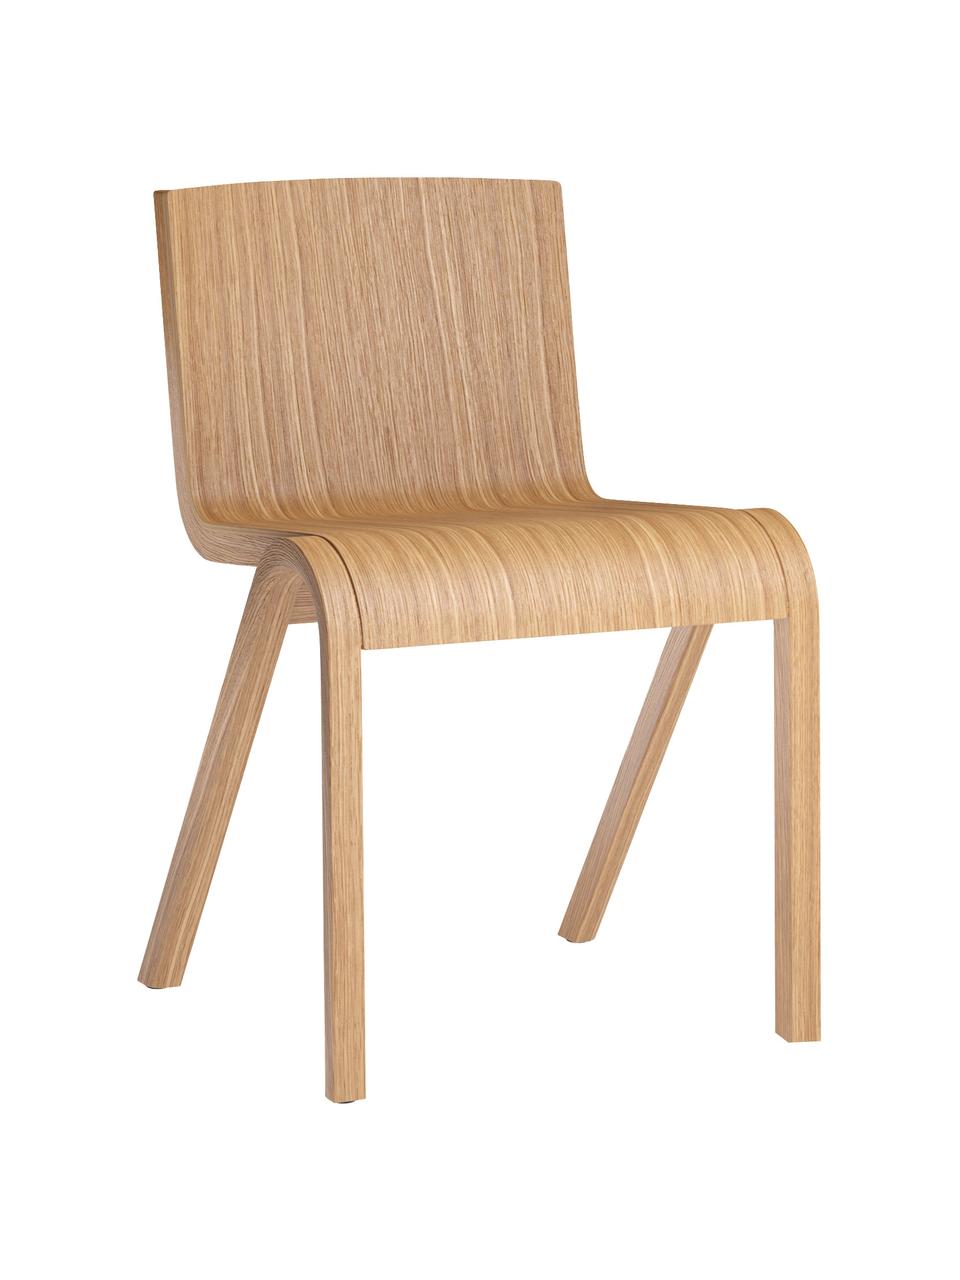 Krzesło z drewna dębowego Ready Dining, Stelaż: drewno dębowe lakierowane, Nogi: drewno dębowe lakierowane, Drewno dębowe lakierowane na jasno, S 47 x G 50 cm